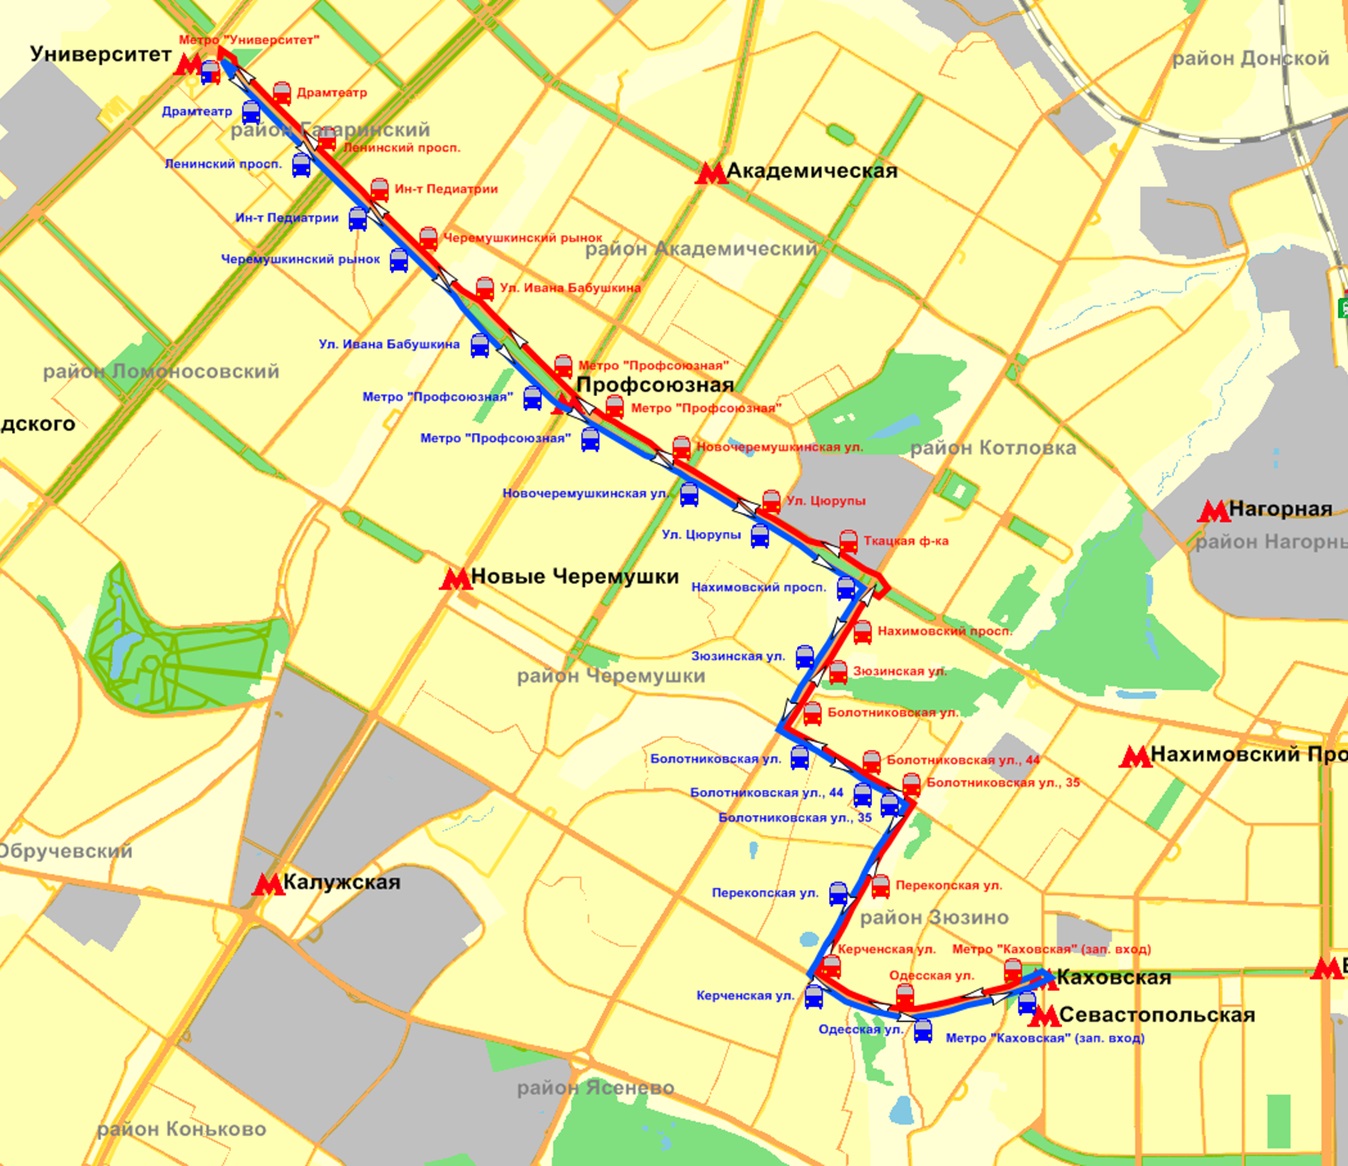 Автобус 253 на карте. Метро Зюзино на карте. Схема метро Москвы Зюзино. Метро Зюзино на карте метрополитена. Карта метро Зюзино на карте Москвы.